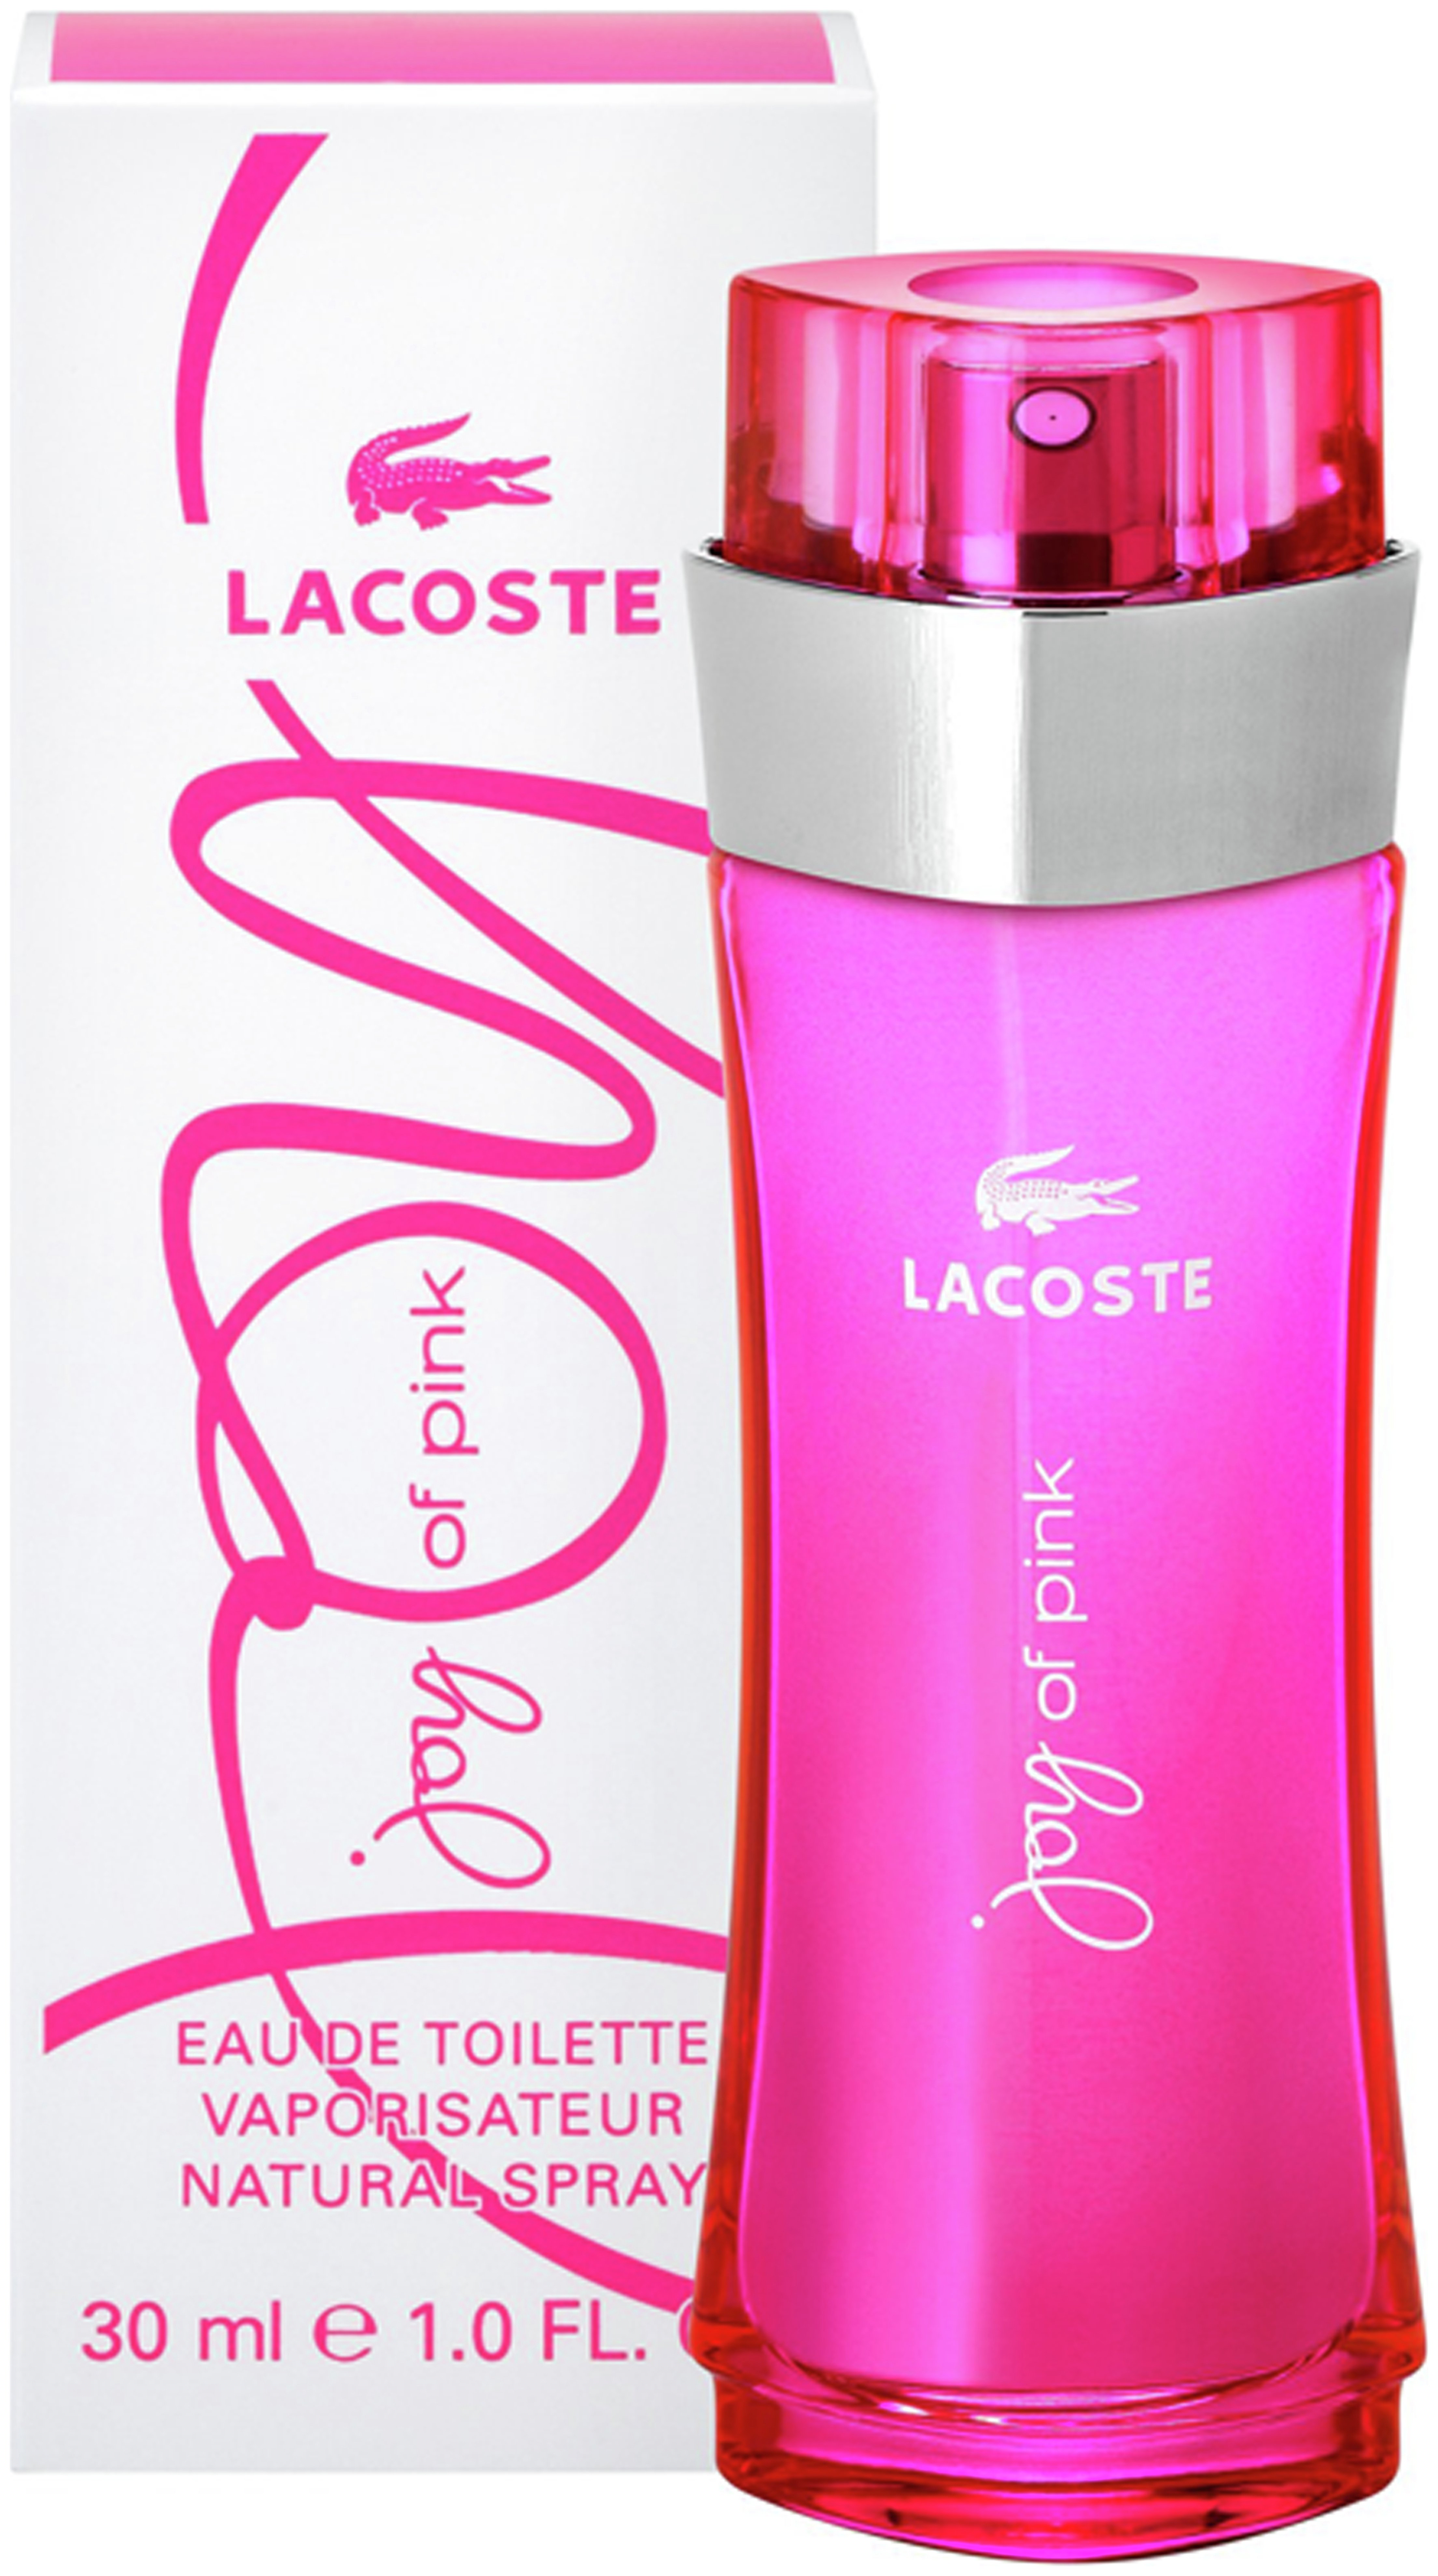 Lacoste Joy of Pink Eau de Toilette Spray for Women - 30ml